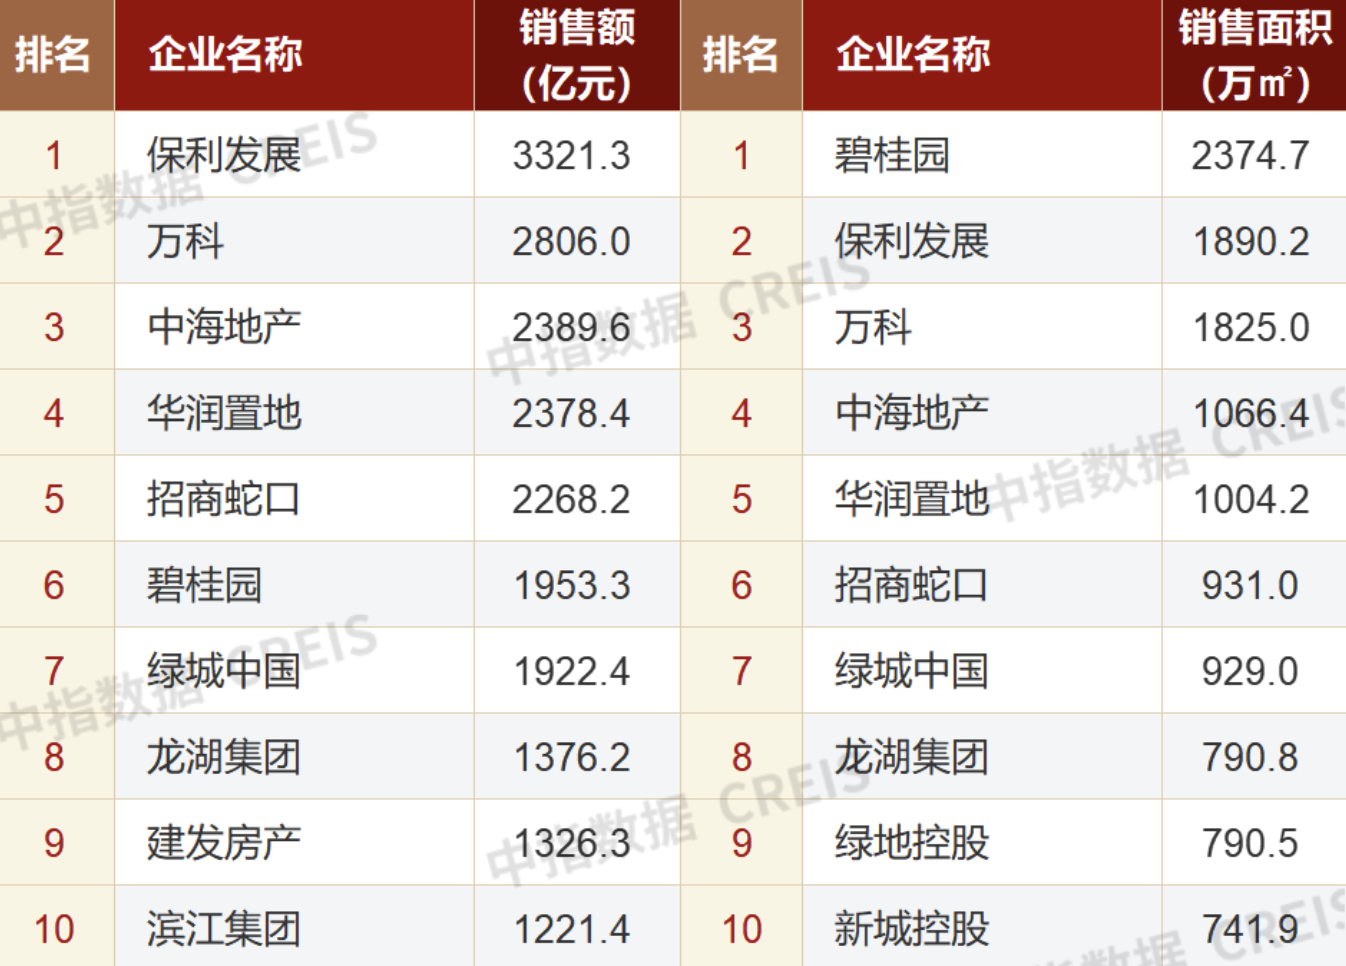 中国亚运代表团成员共1329名 其中有36名奥运冠军